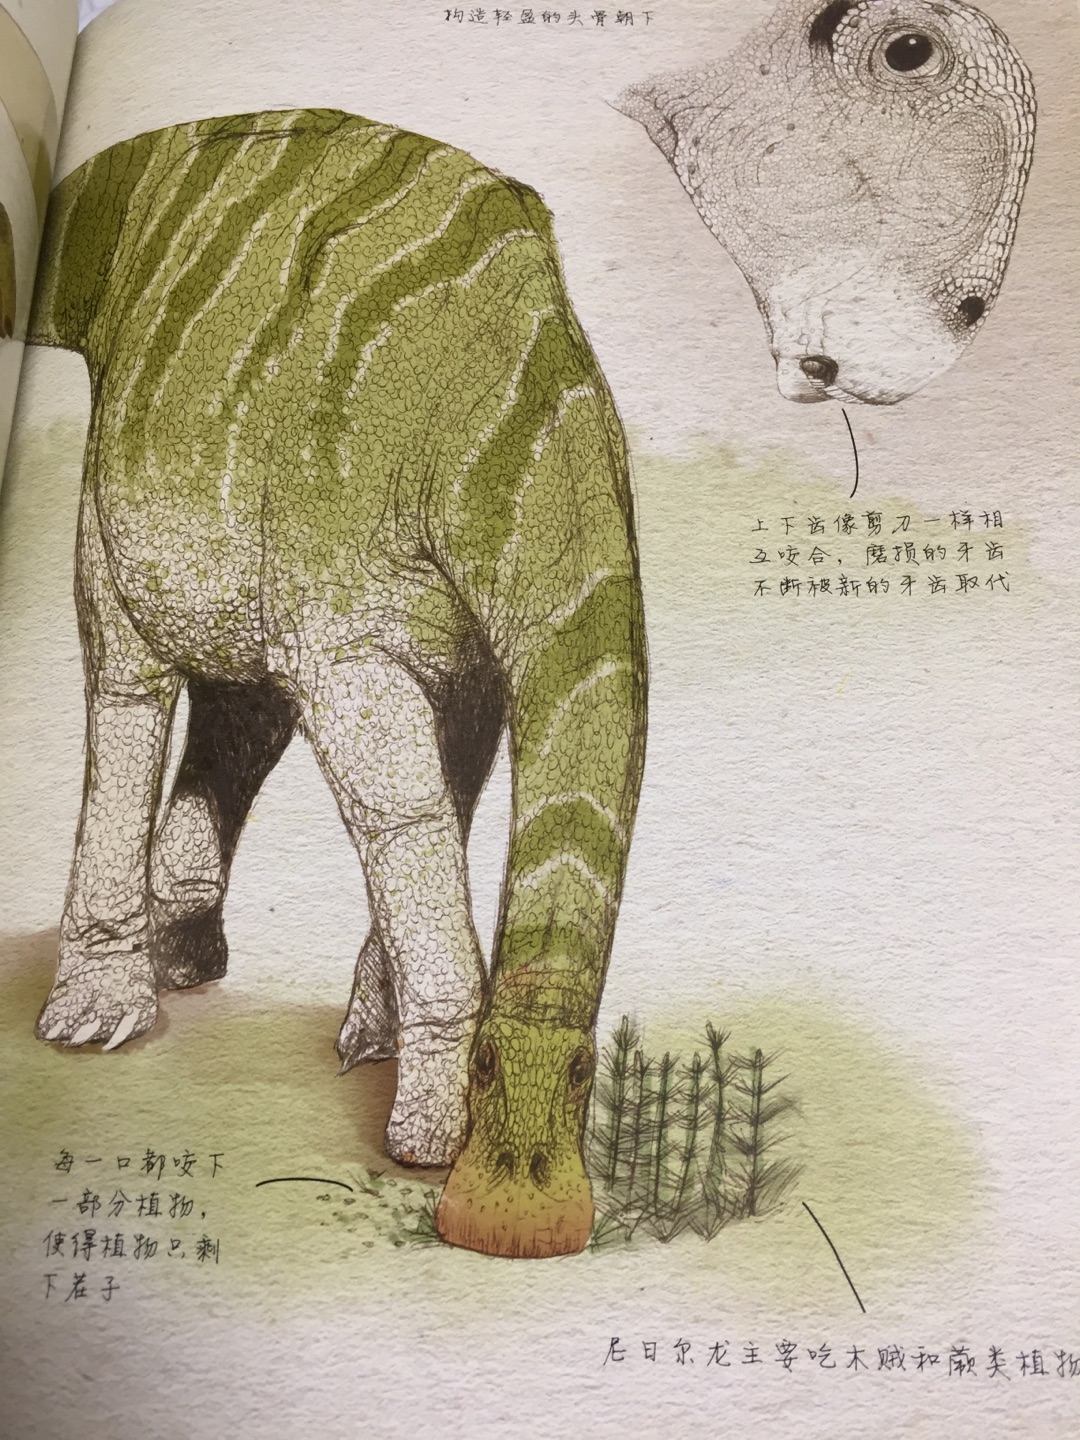 如果你看过《侏罗纪公园》系列电影，一定会对这些曾经主宰地球的庞然大物印象深刻。事实上，恐龙的形态、分类非常丰富，既有比7层楼还高的蜥脚类，也有与老鹰差不多大的兽脚类，有全身都被羽毛覆盖的华丽羽王龙，有拥有看不见尽头的长脖子的波塞冬龙。想象一下看到活的、正在呼吸的恐龙会怎么样？本书将当前的古生物发现与高精度的绘图相结合，带领读者展开时光旅行，比以往任何时候更接近史前生物。回到1.2亿年前广阔的森林和无尽的沙漠。想象一下与早期鸟类一起飞行，躲过凶恶的二足捕食者，与一群吃叶子的庞然大物走在一起。拥有这本古生物学家的笔记，年轻的读者可以获得许多白垩纪早期恐龙的第一手资料，深入了解这些曾经生活在地球上的不可思议的生物。